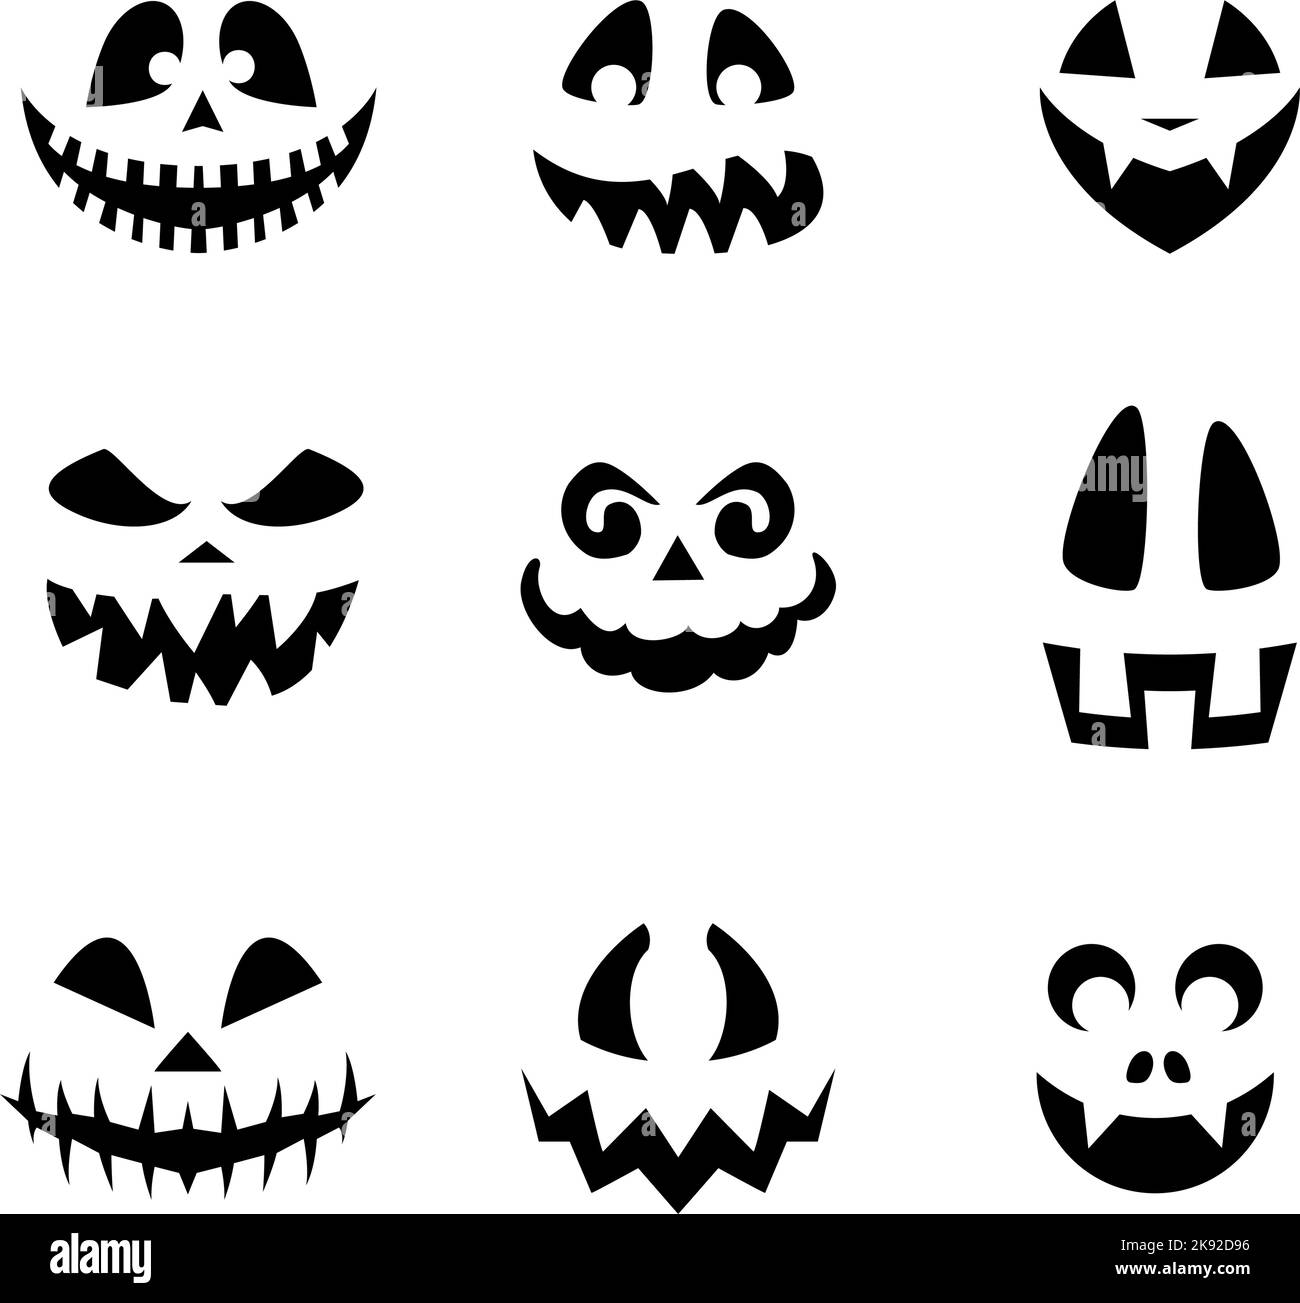 Sammlung von Halloween Kürbisse flache Gesichter Silhouetten. Monochrome Symbole auf Weiß eingestellt. Schablone mit verschiedenen Augen, Zähnen und Nasen für ausgeschnittene Ja Stock Vektor